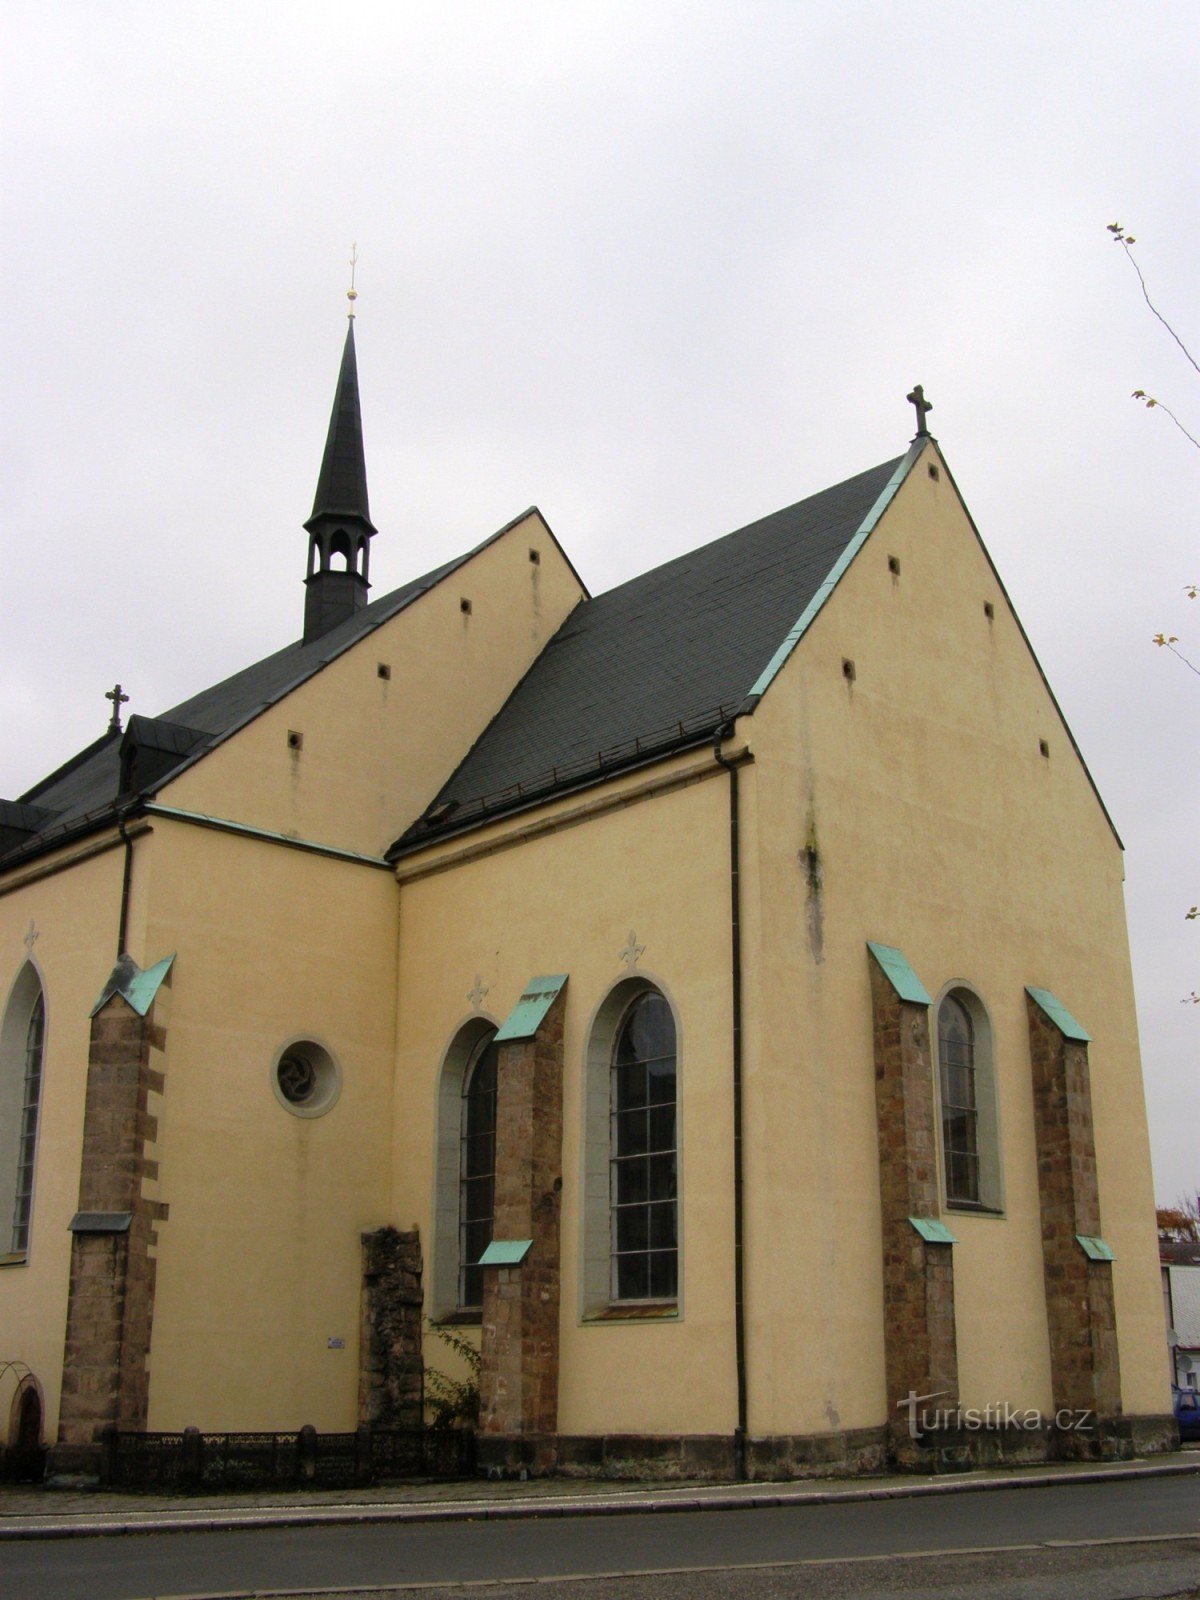 Dvur Králové - Kirche St. Johannes der Täufer